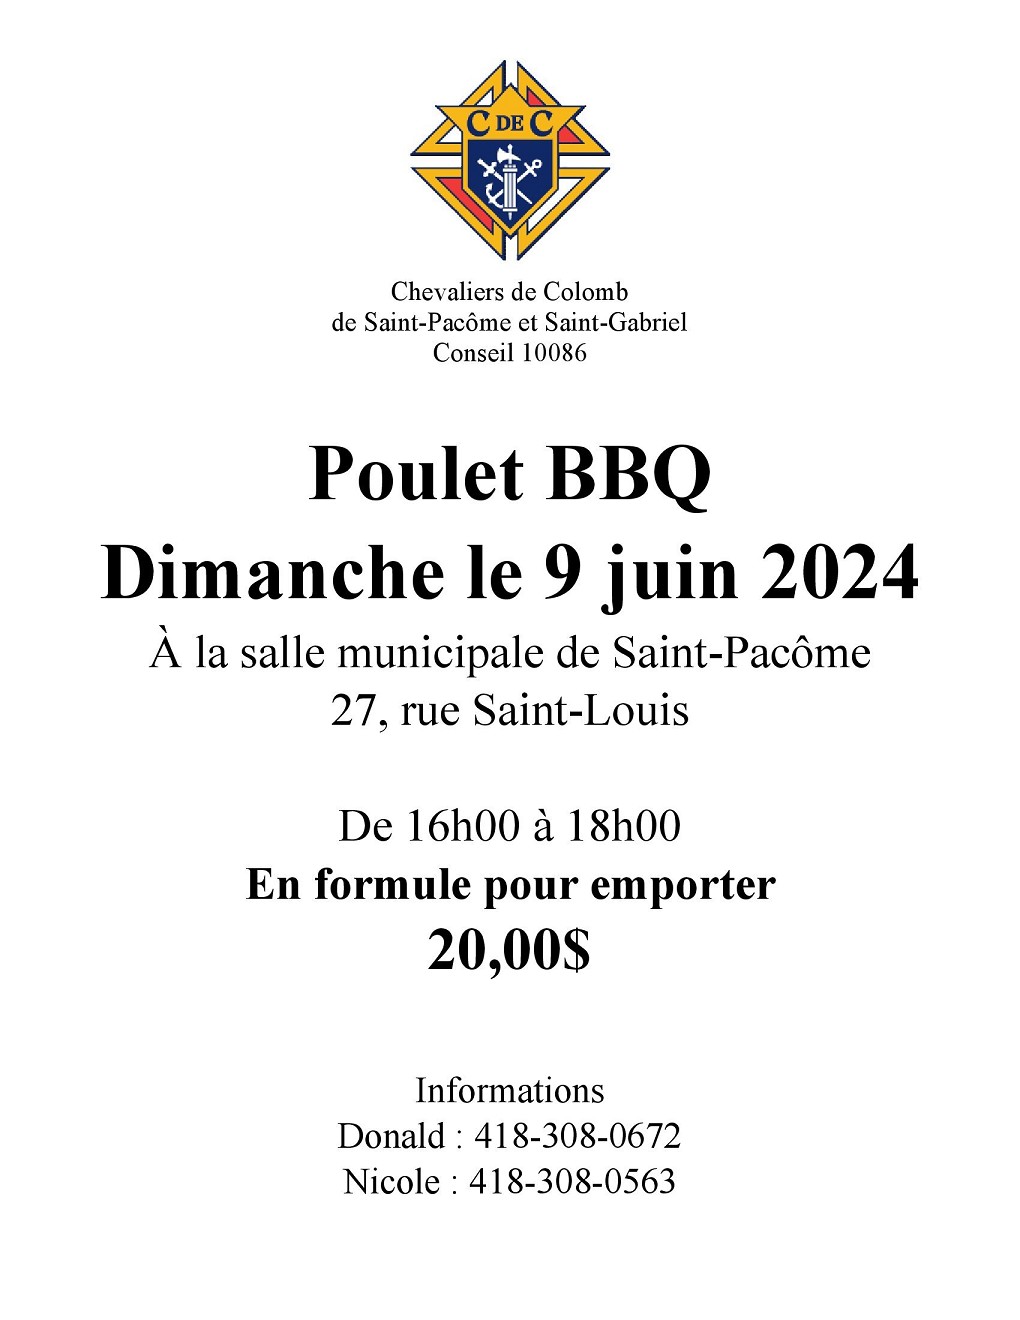 Poulet BBQ des Chevaliers de Colomb de Saint-Pacôme et Saint-Gabriel